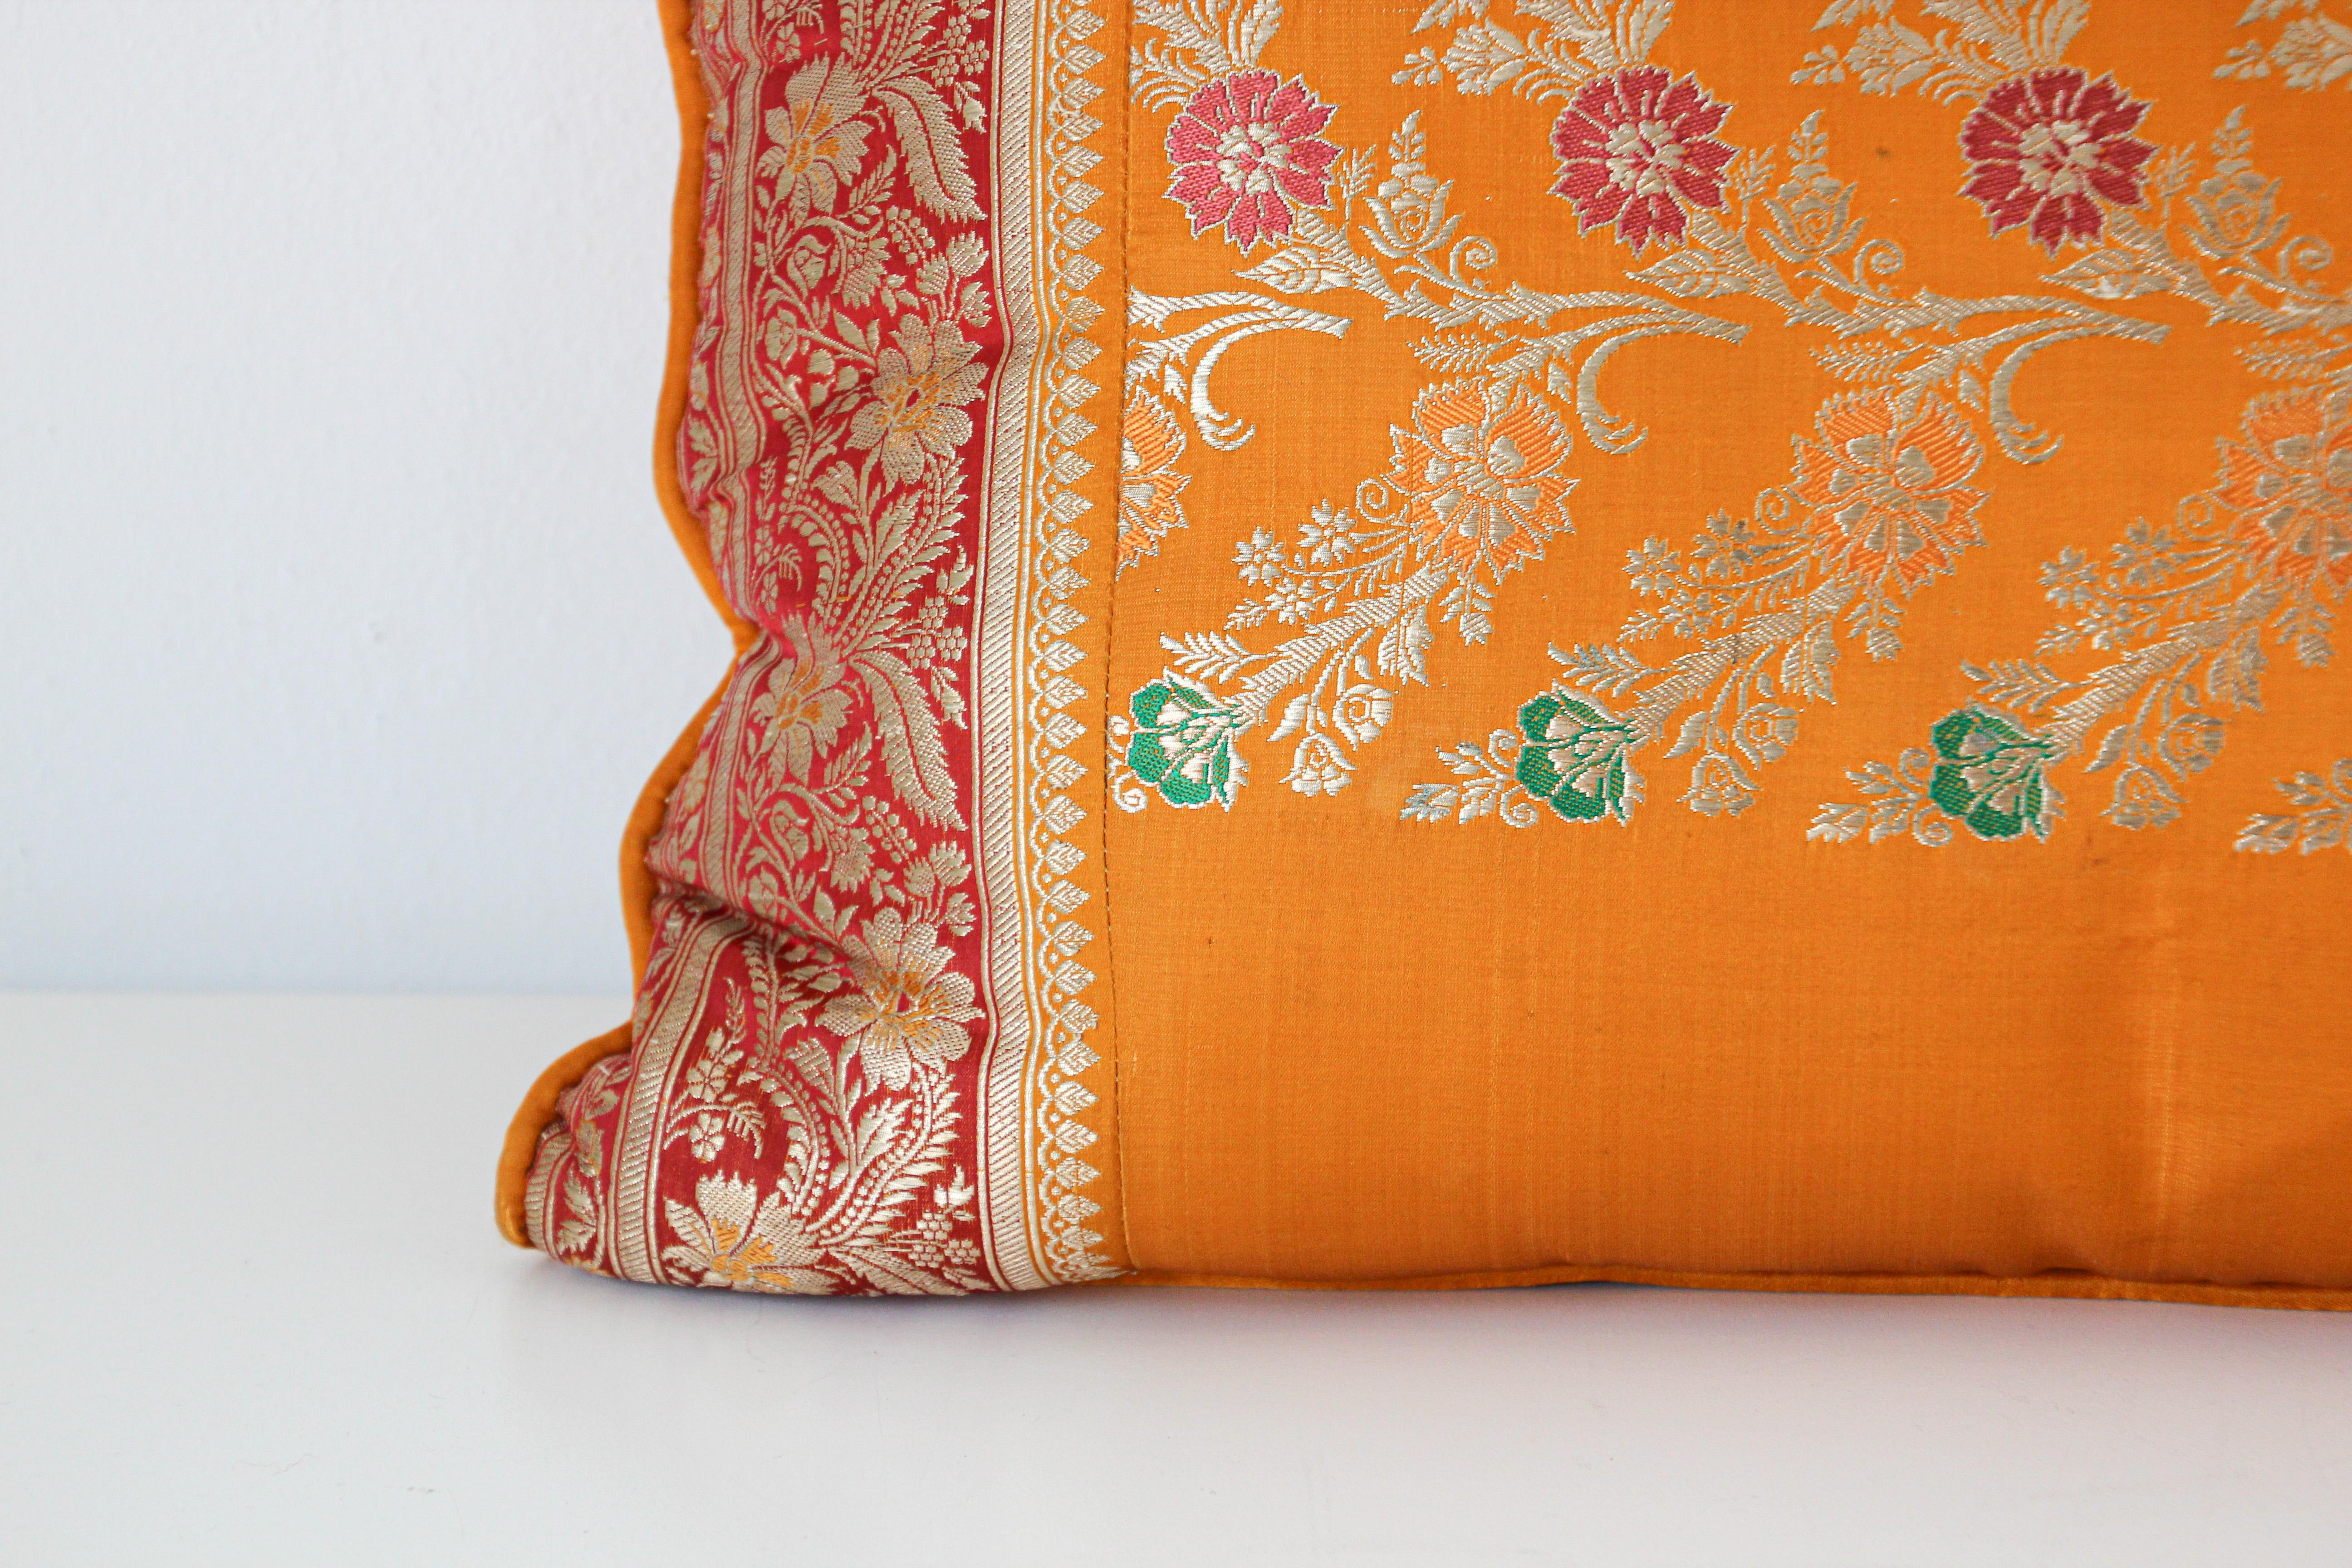 Maßgeschneidertes Lendenkissen aus Seide, hergestellt aus einem Hochzeitsseidensari in den Farben Orange, Fushia, Gold und Grün.
Dekorative, gedrehte Verzierungen rundherum.
Luxuriöses dekoratives Lendenkissen im